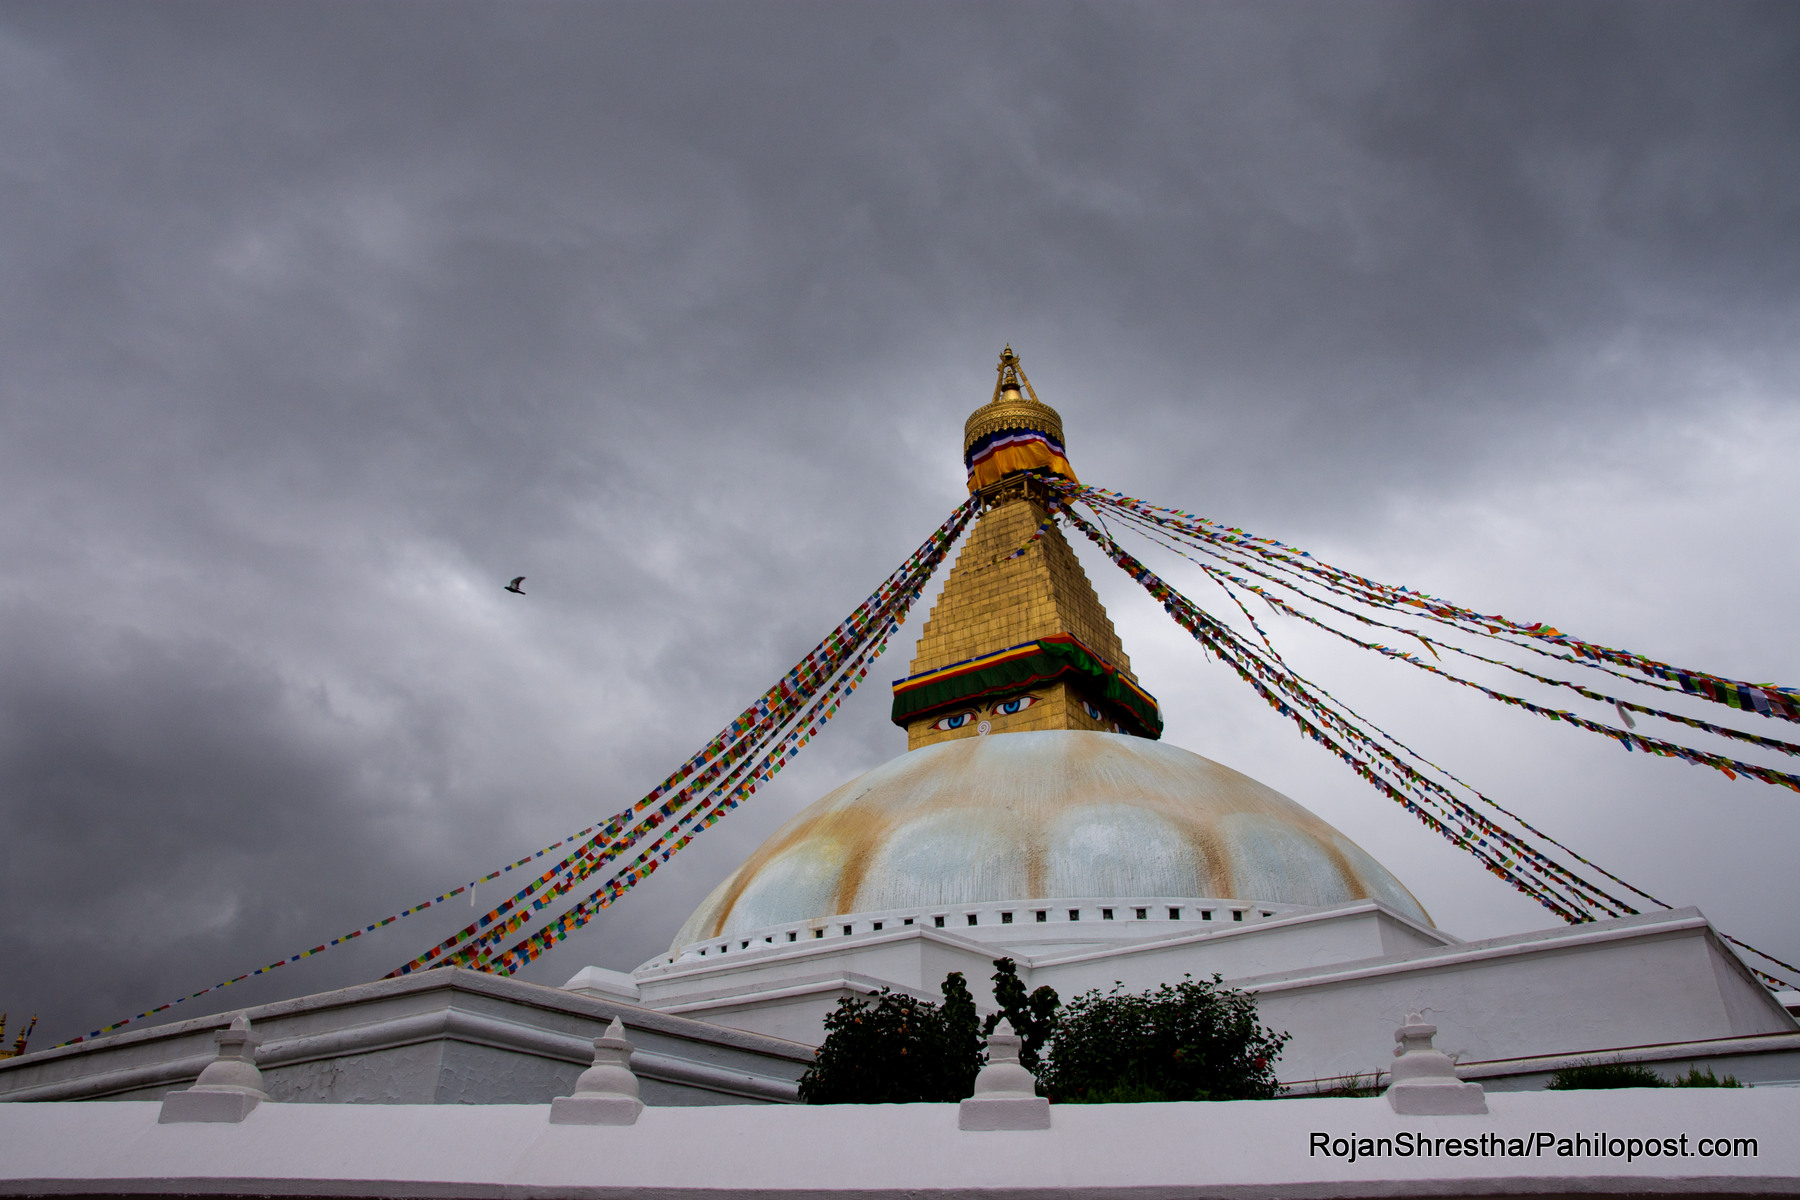 राज्यको नजरमा नपरेको बौद्ध आन्दोलन : 'चिनियाँ लामा'का कारण बौद्धमा कसरी फैलियो अशान्तिको बादल?